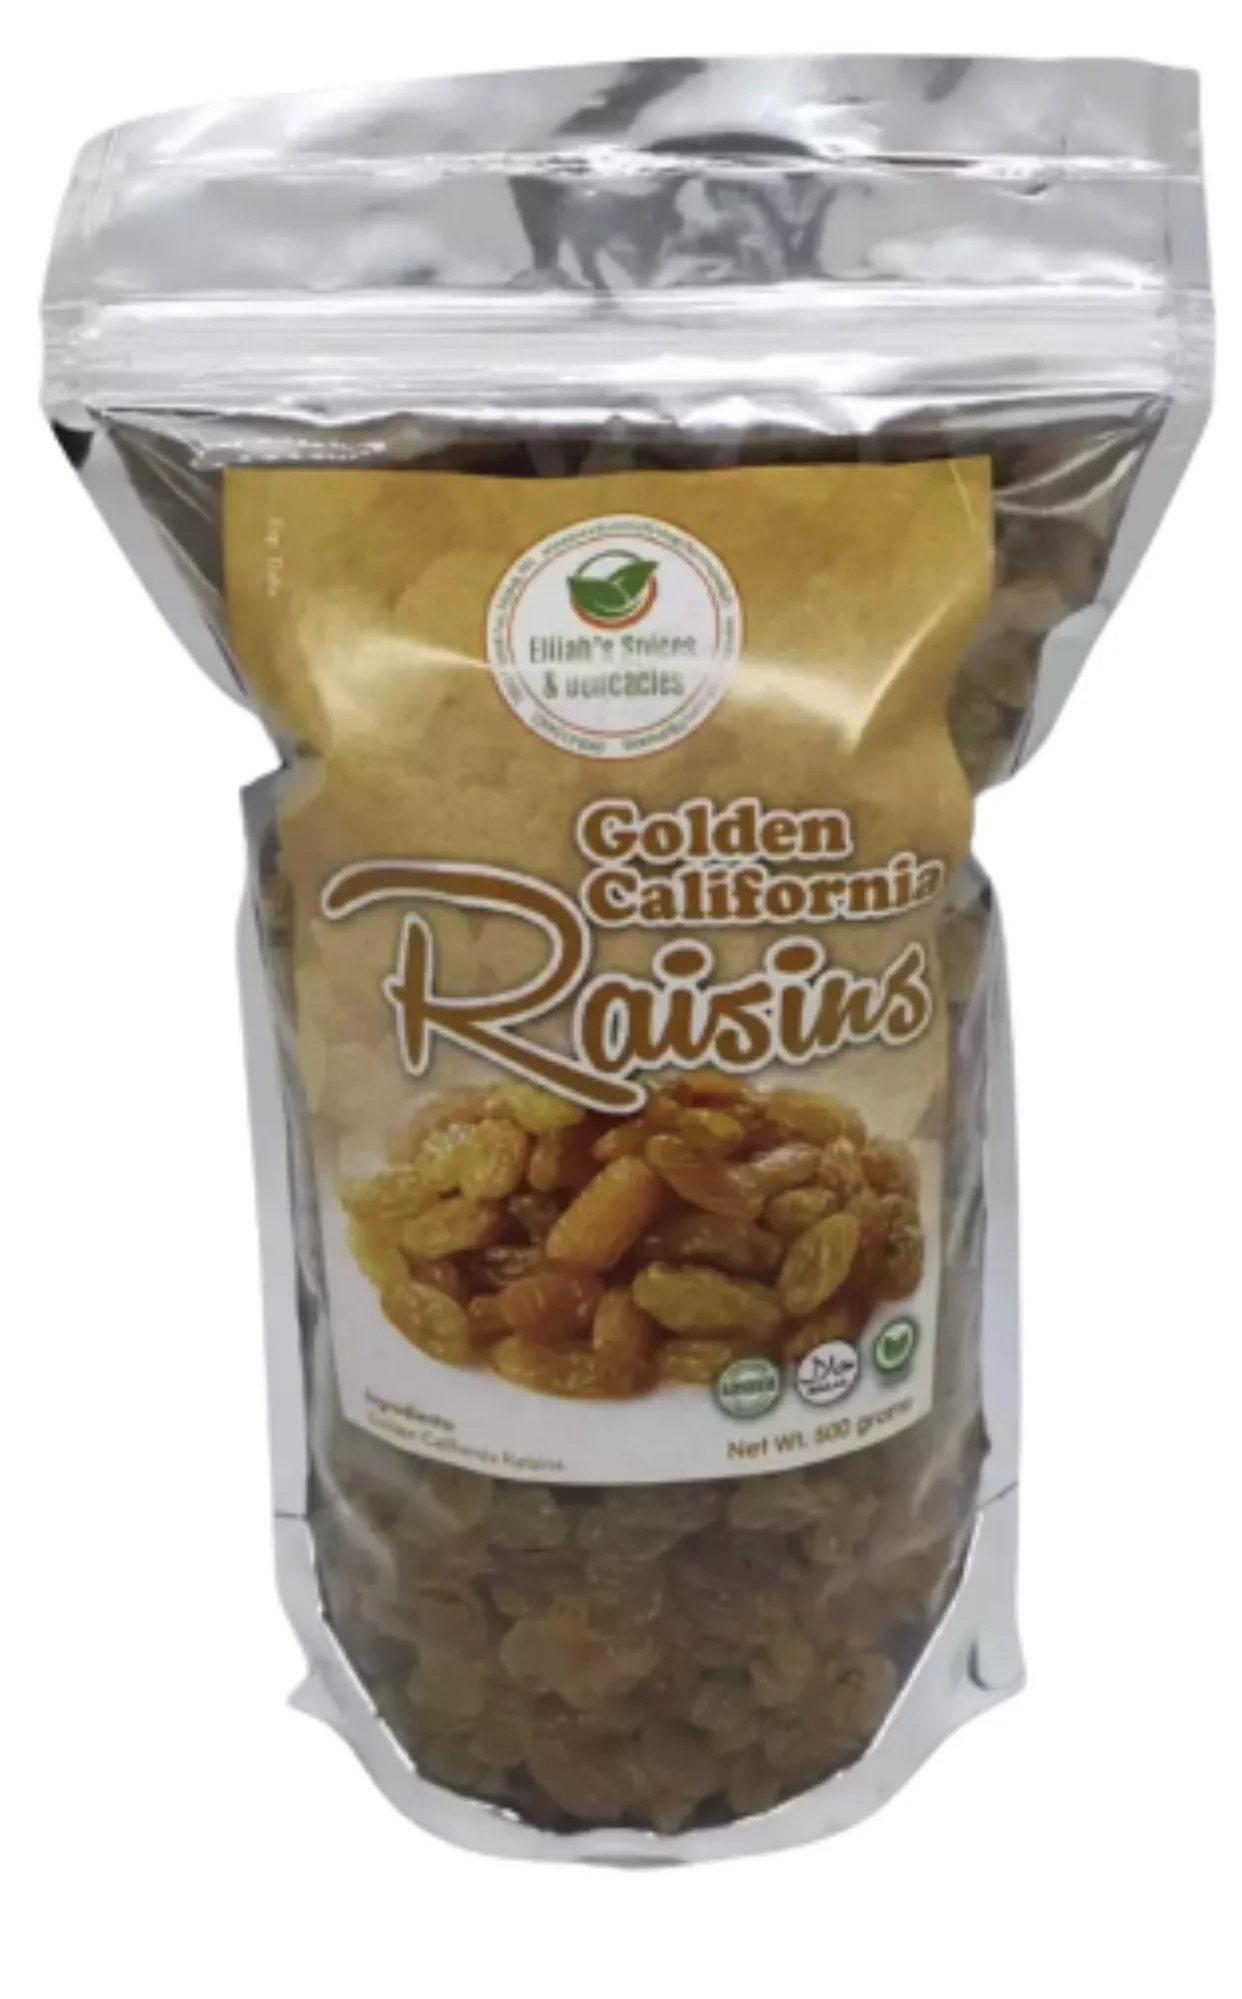 California Golden Raisins 500 Grams